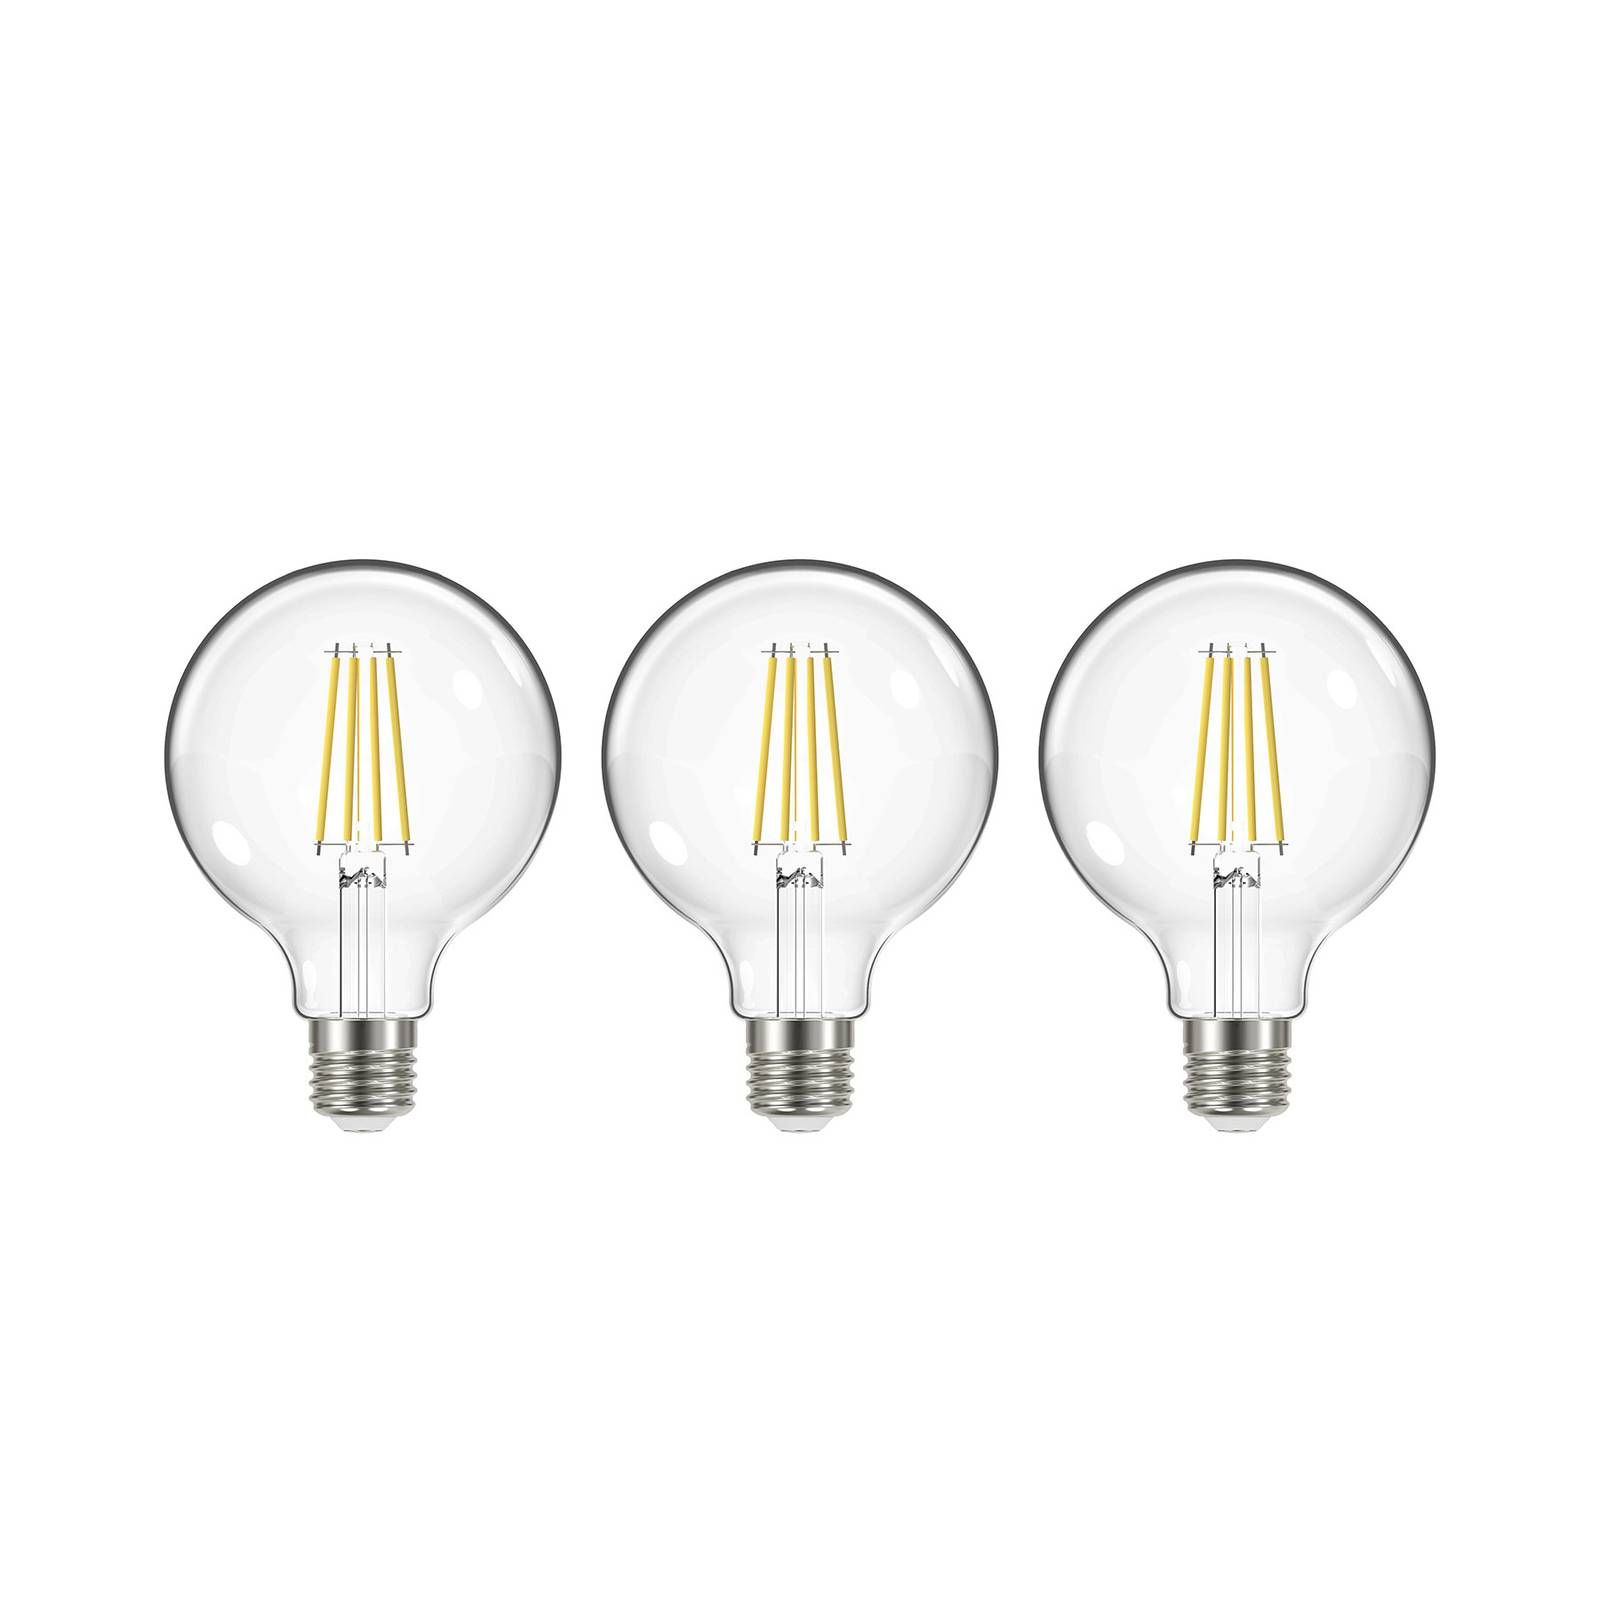 Arcchio LED žiarovka G95 E27 3, 8W 2 700K 806lm 3ks, sklo, polykarbonát, hliník, E27, 3.8W, Energialuokka: A, P: 13.8 cm